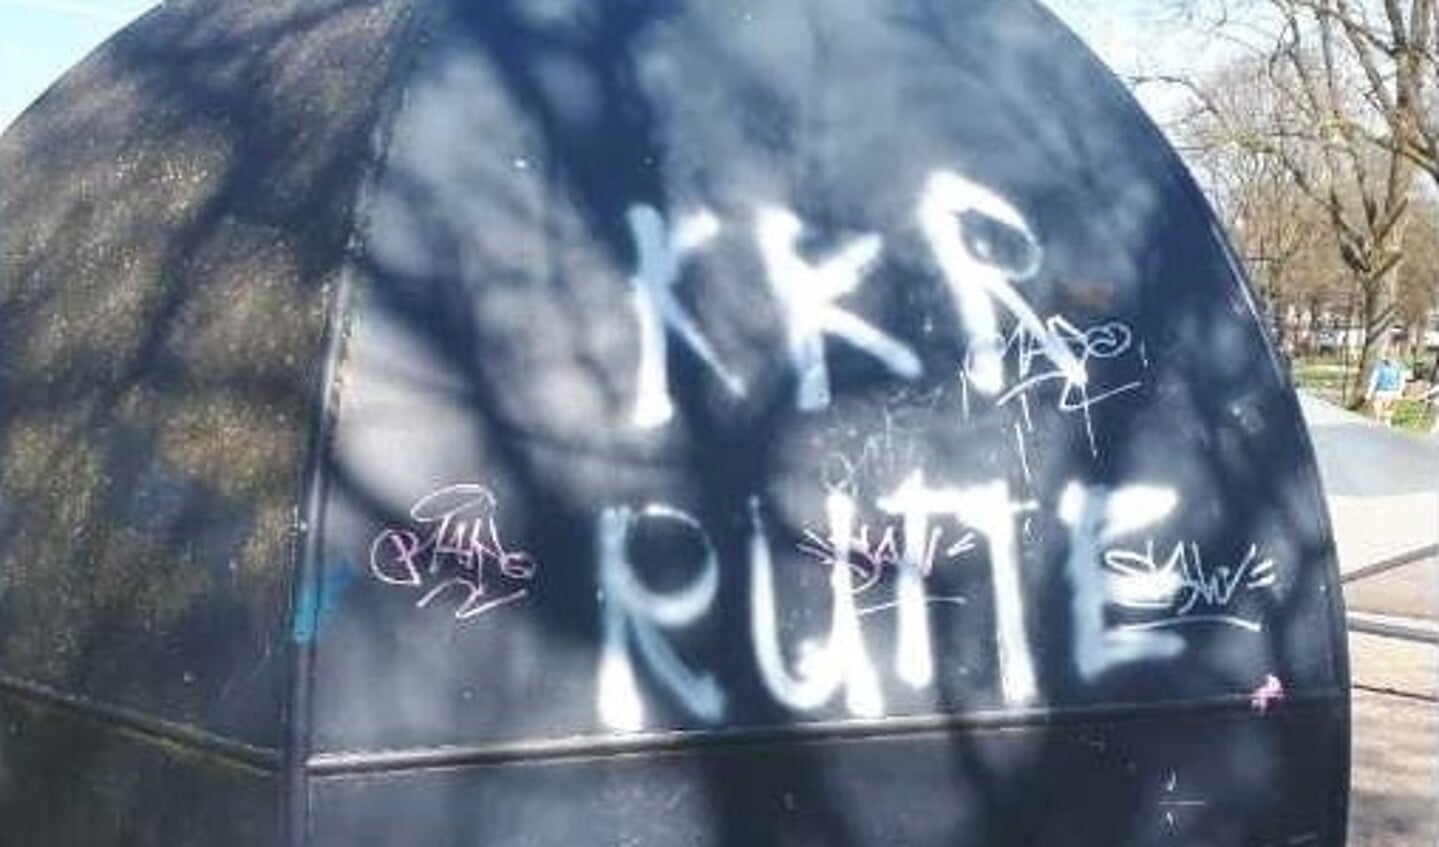 Graffiti in Swifterbant.